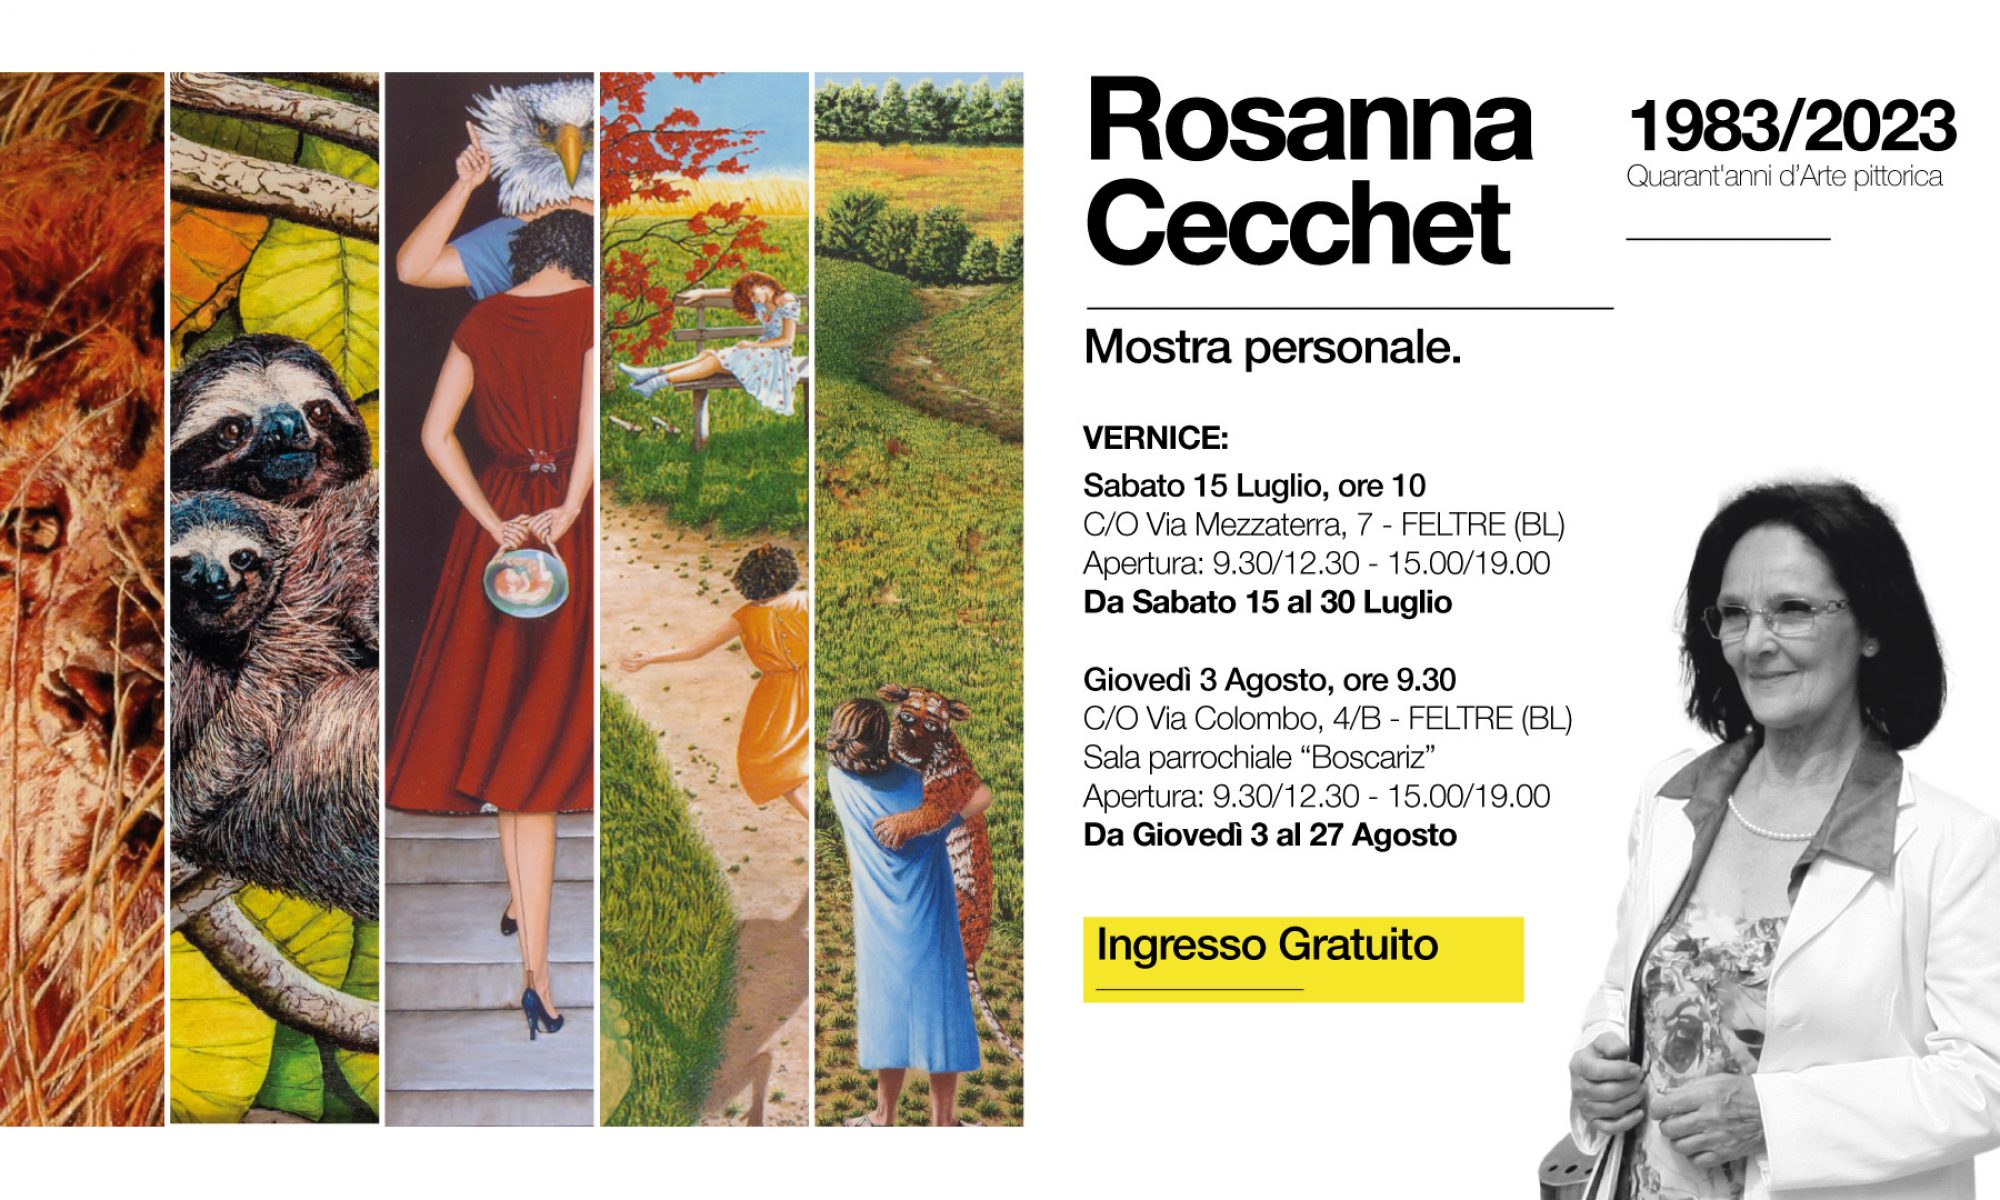 Rosanna Cecchet